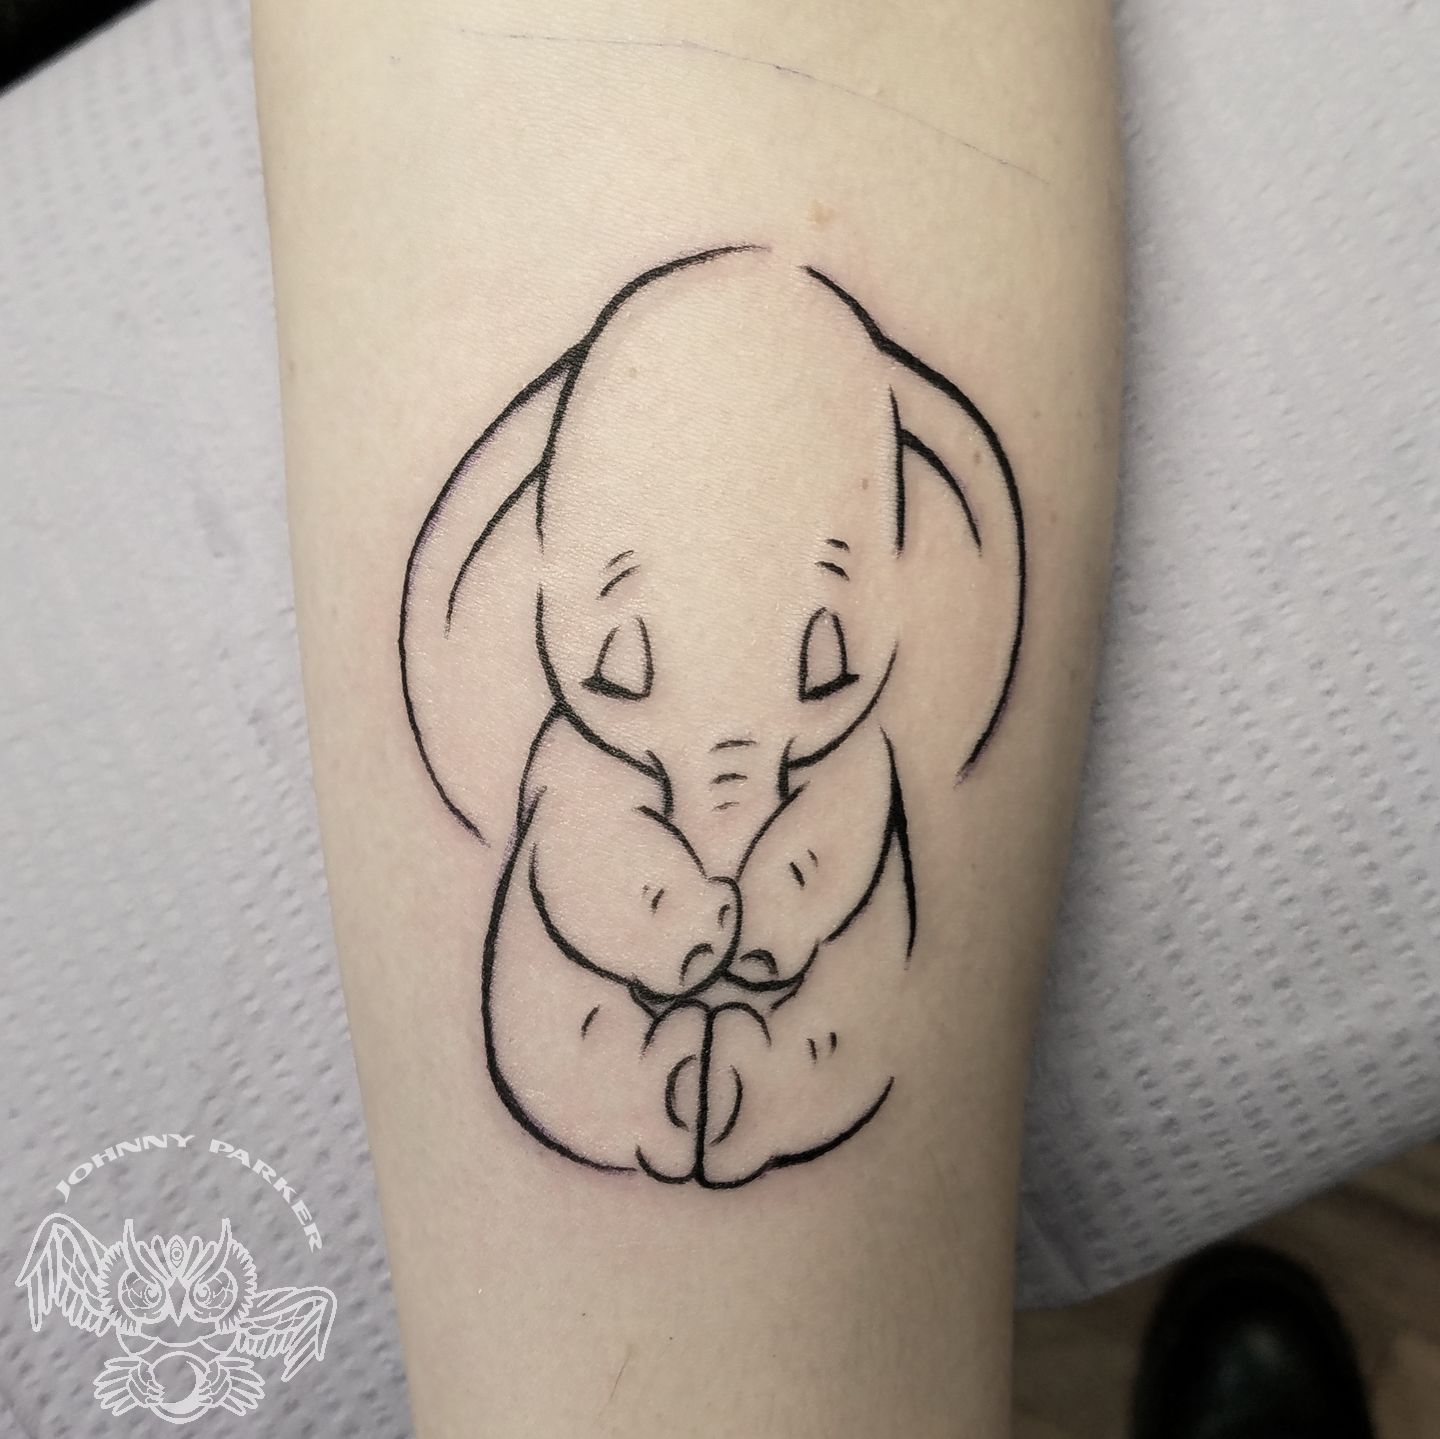 Latest Dumbo Tattoos | Find Dumbo Tattoos